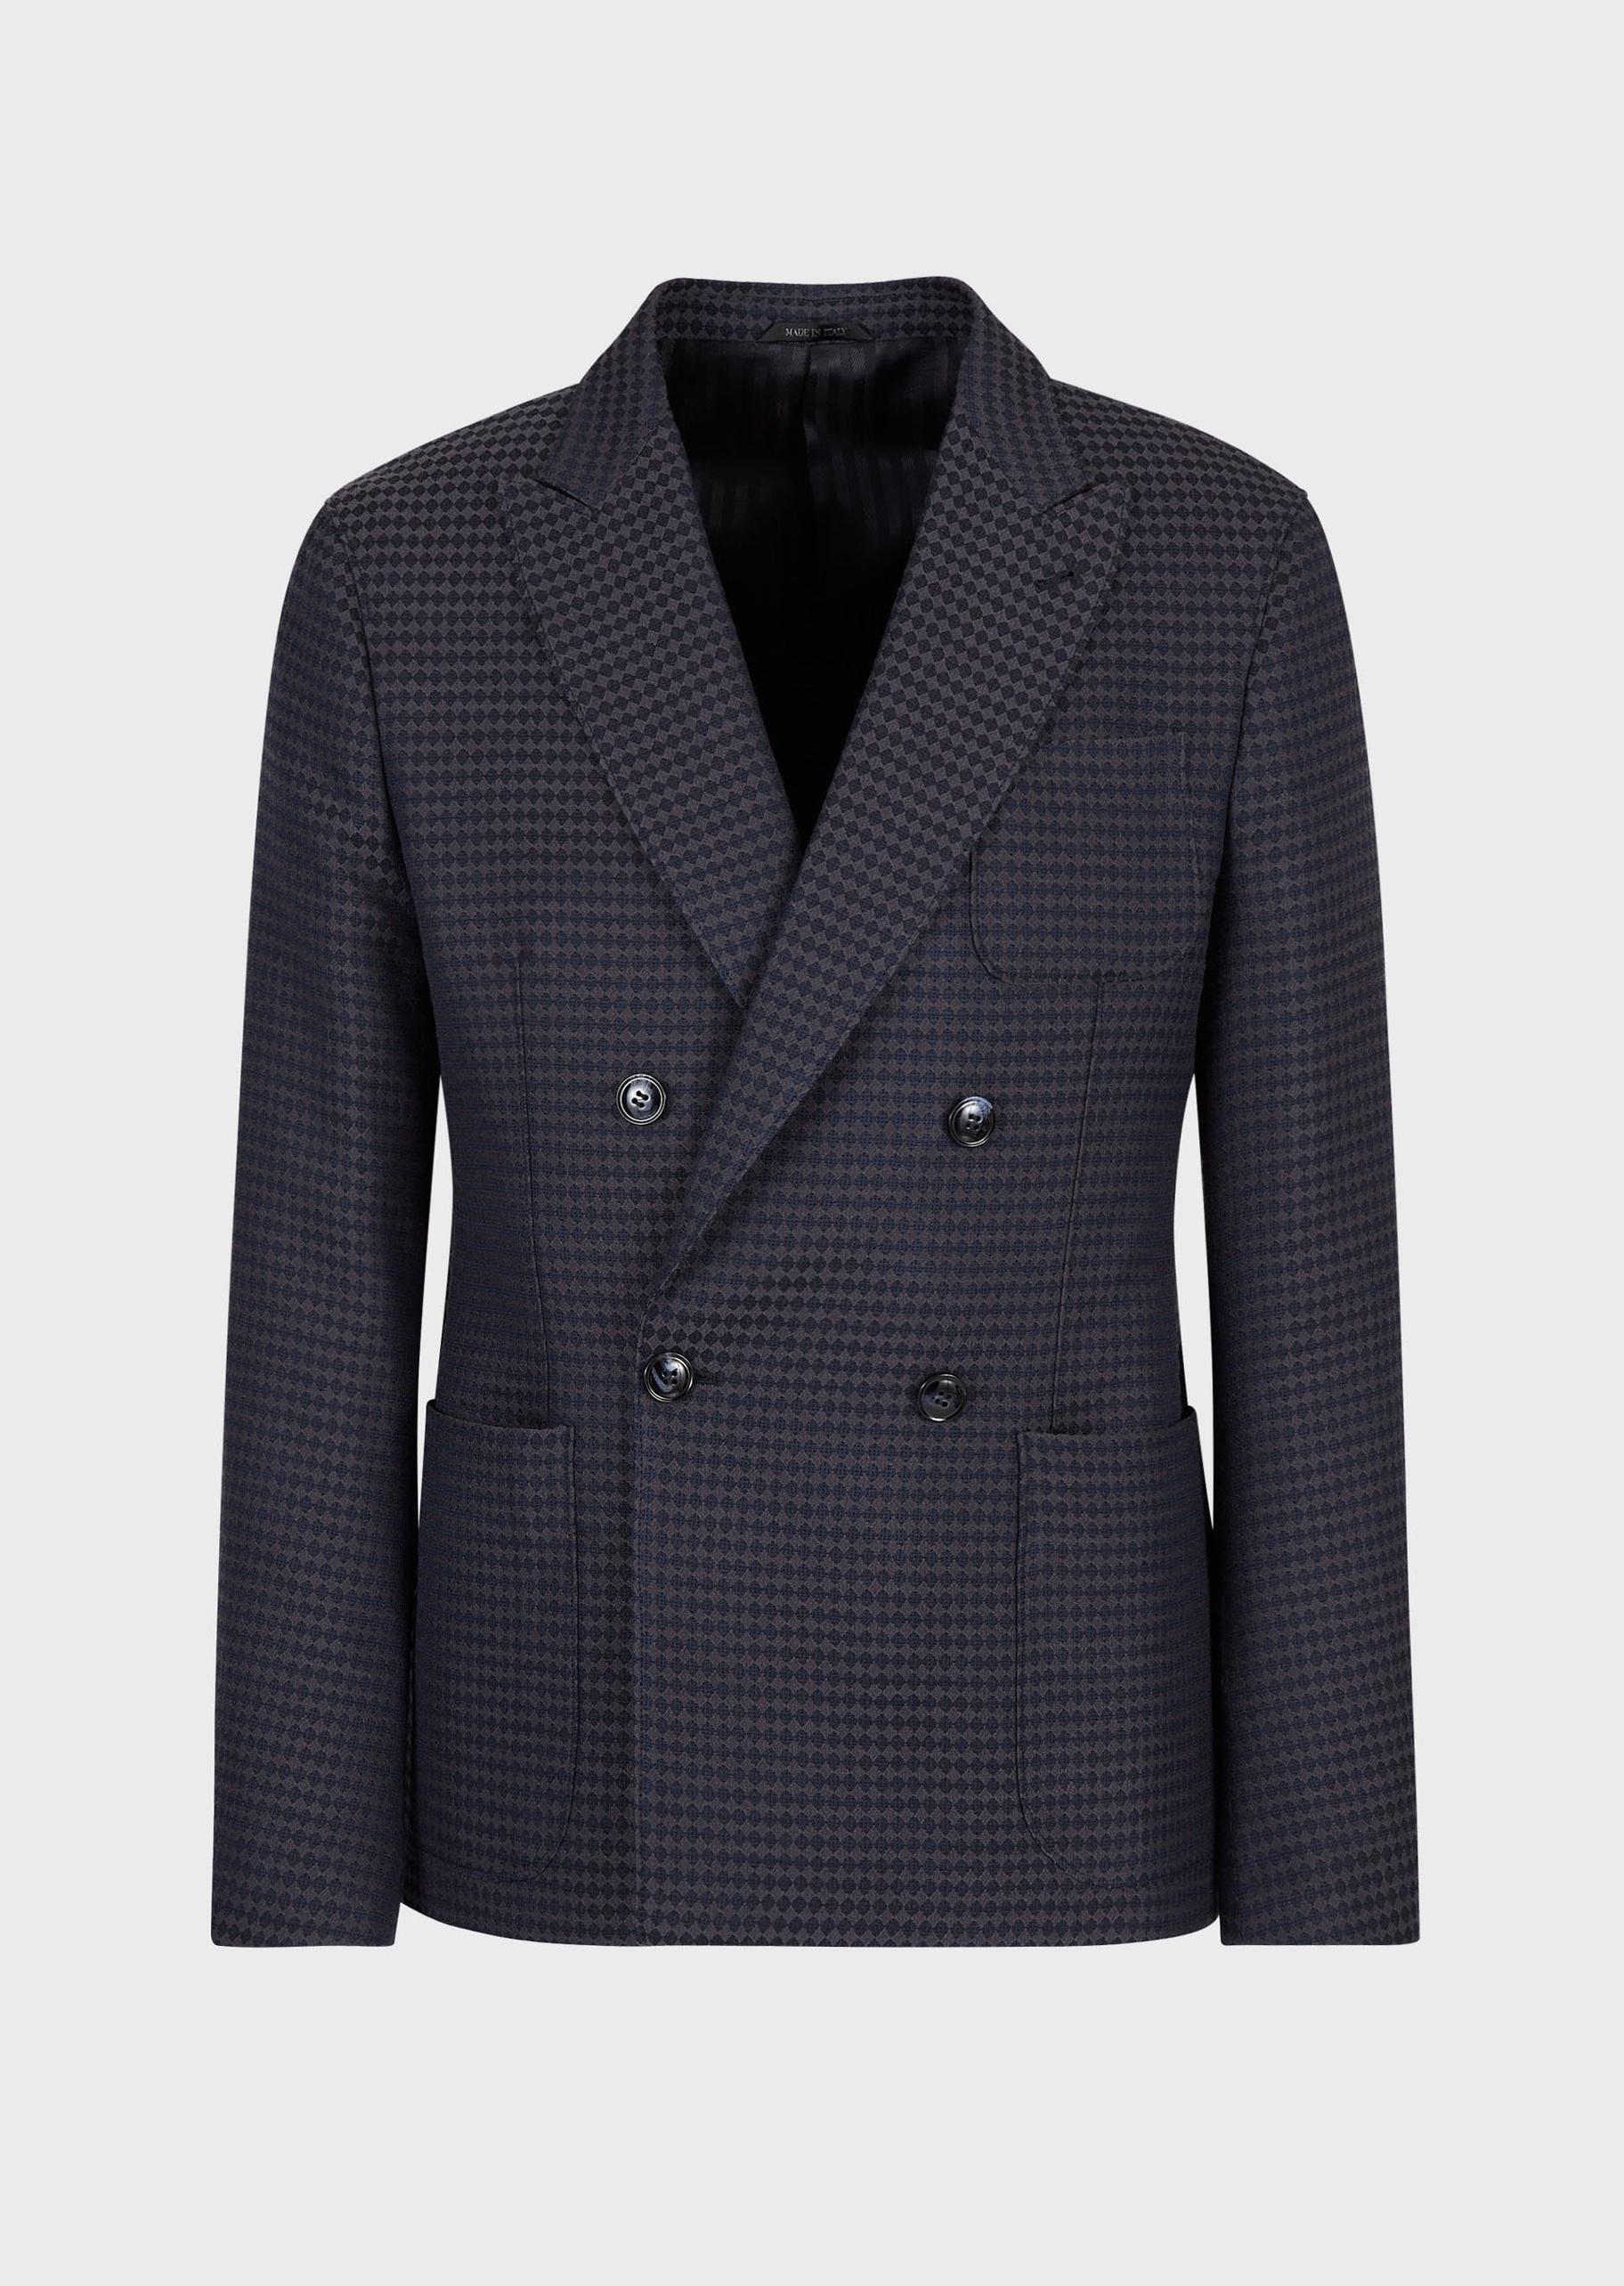 Giorgio Armani 几何双排扣西装夹克